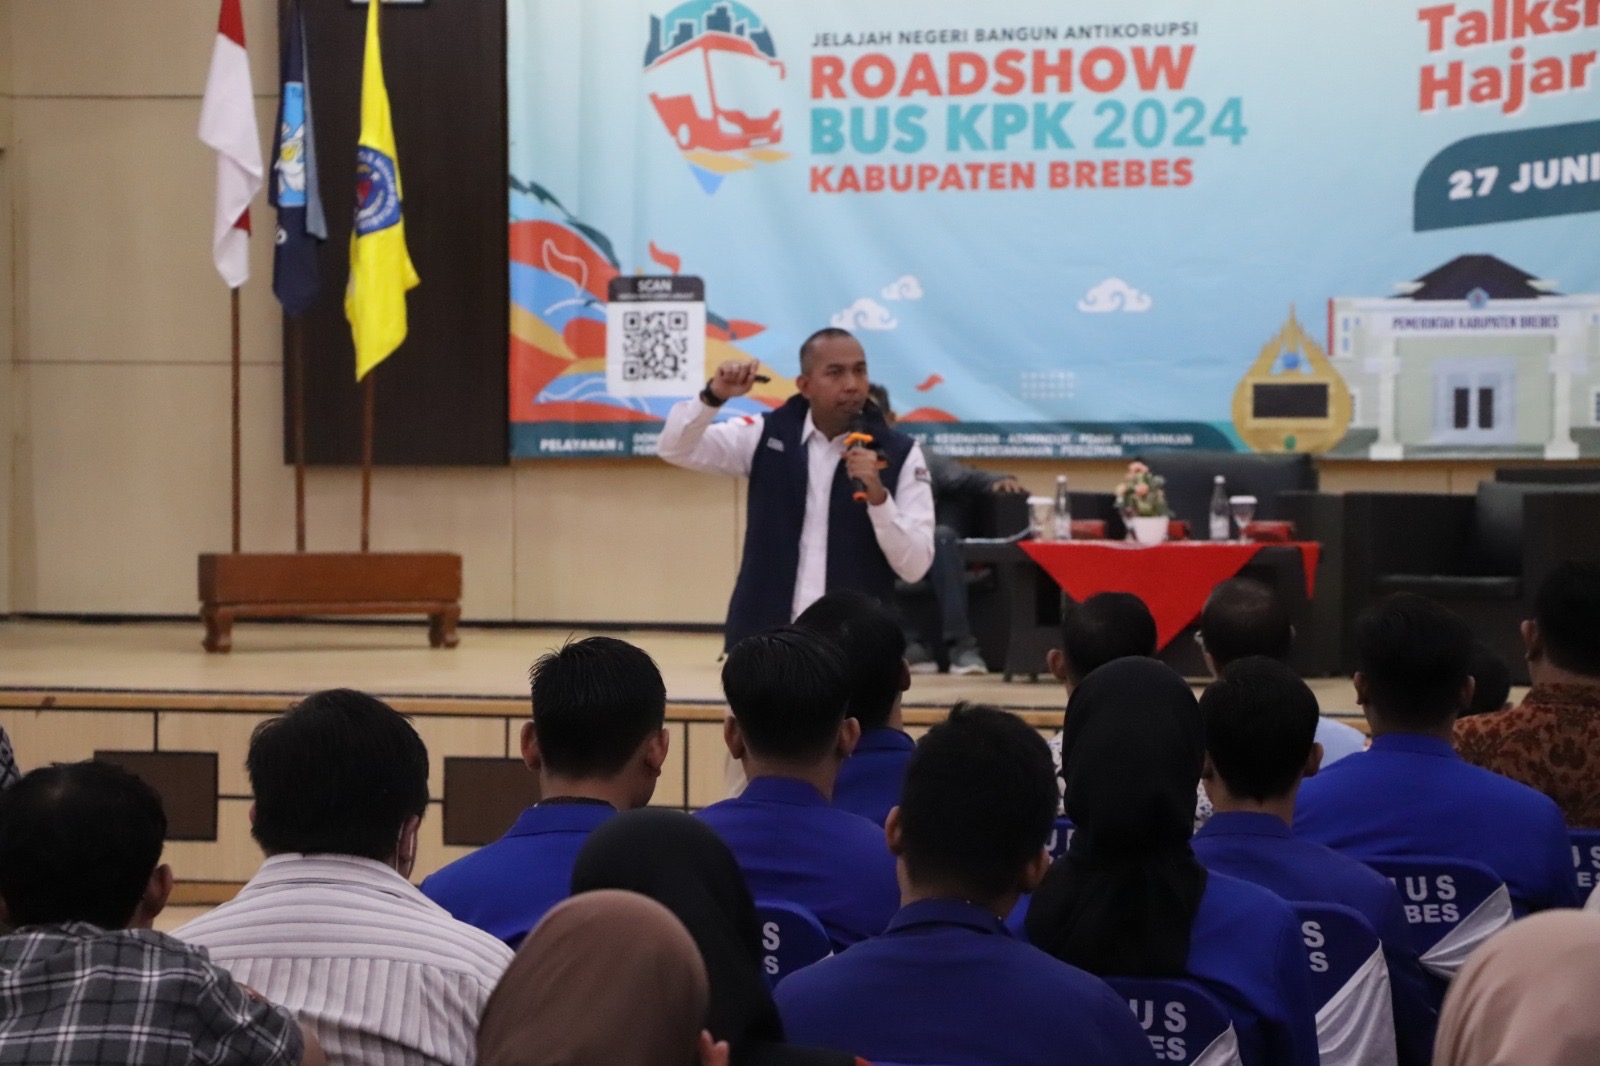 Roadshow ke Brebes, KPK Beri Pemahaman Anti Korupsi di Hadapan Ratusan Mahasiswa